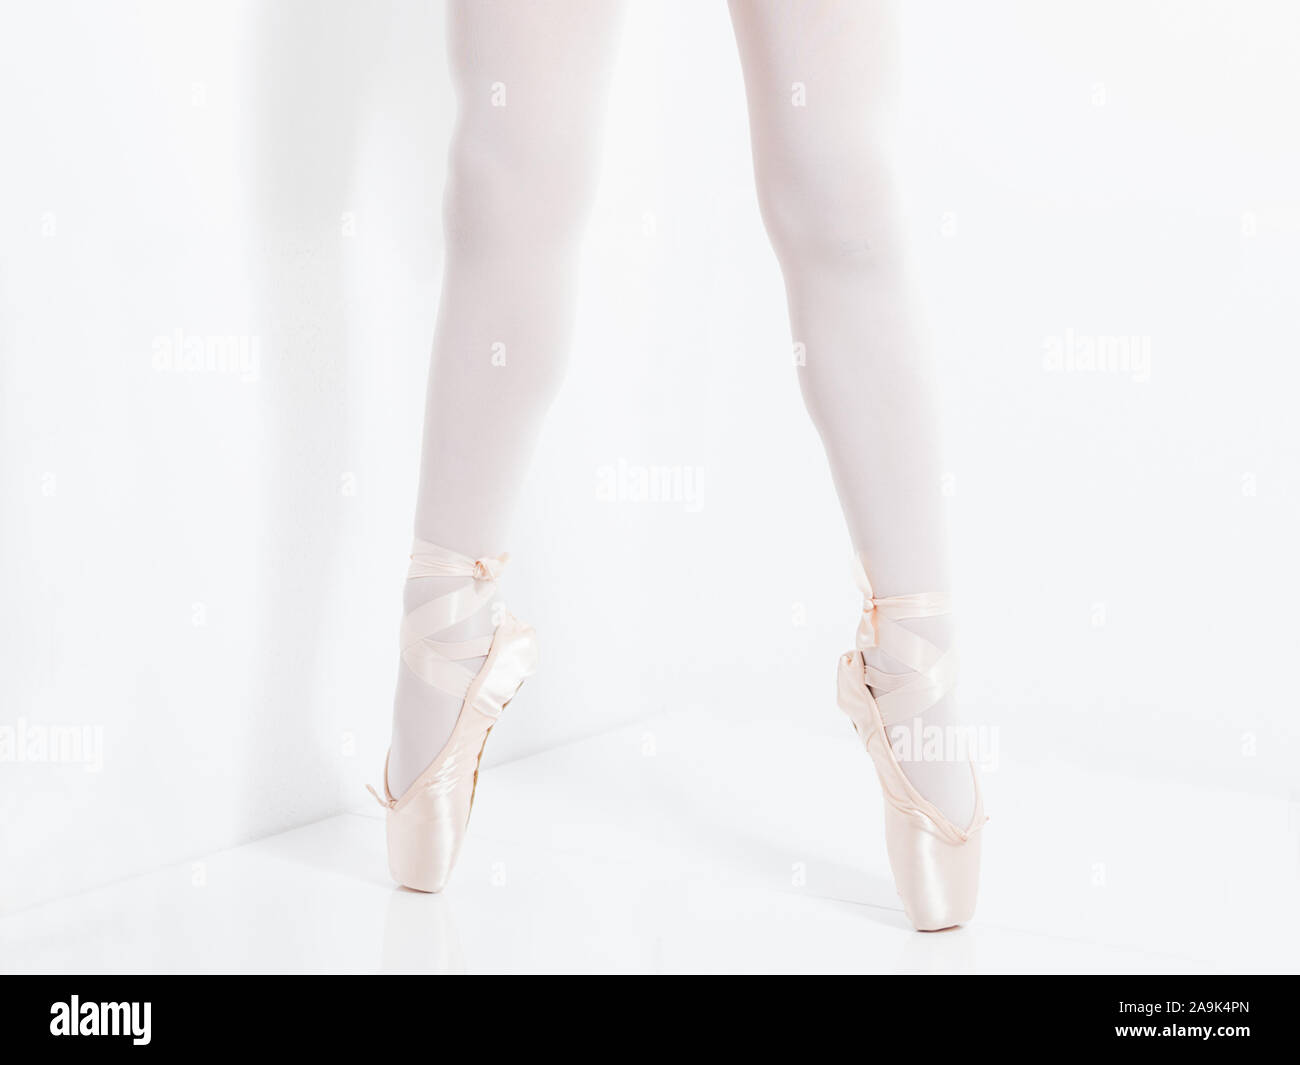 Dettaglio delle gambe e dei piedi con raso rosa pointe le scarpe di una ballerina classica in punta di piedi Foto Stock